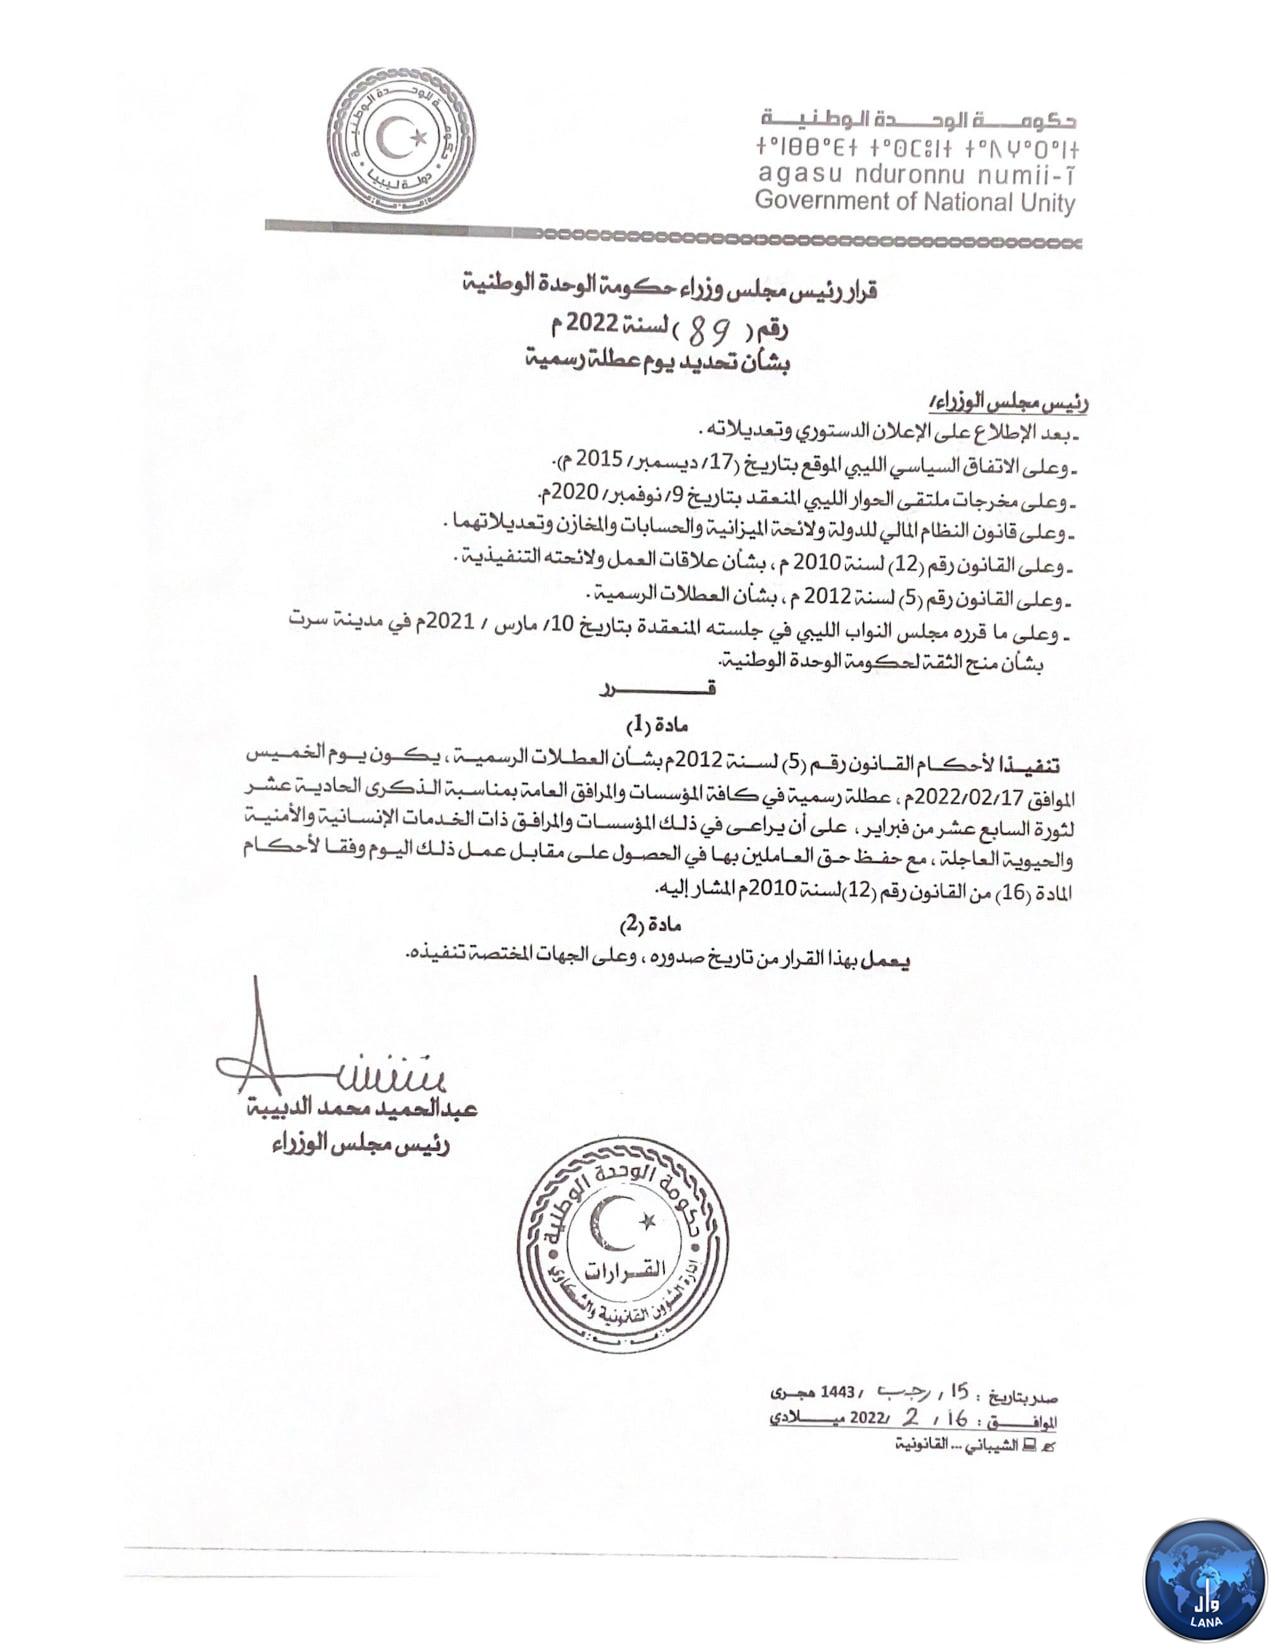 زهرة المدينة كتابة خطاب جائزة  وكالة الأنباء الليبية - حكومة الوحدة الوطنية تعلن غد الخميس عطلة رسمية  بمناسبة الذكرى الحادية عشر لثورة 17 فبراير .